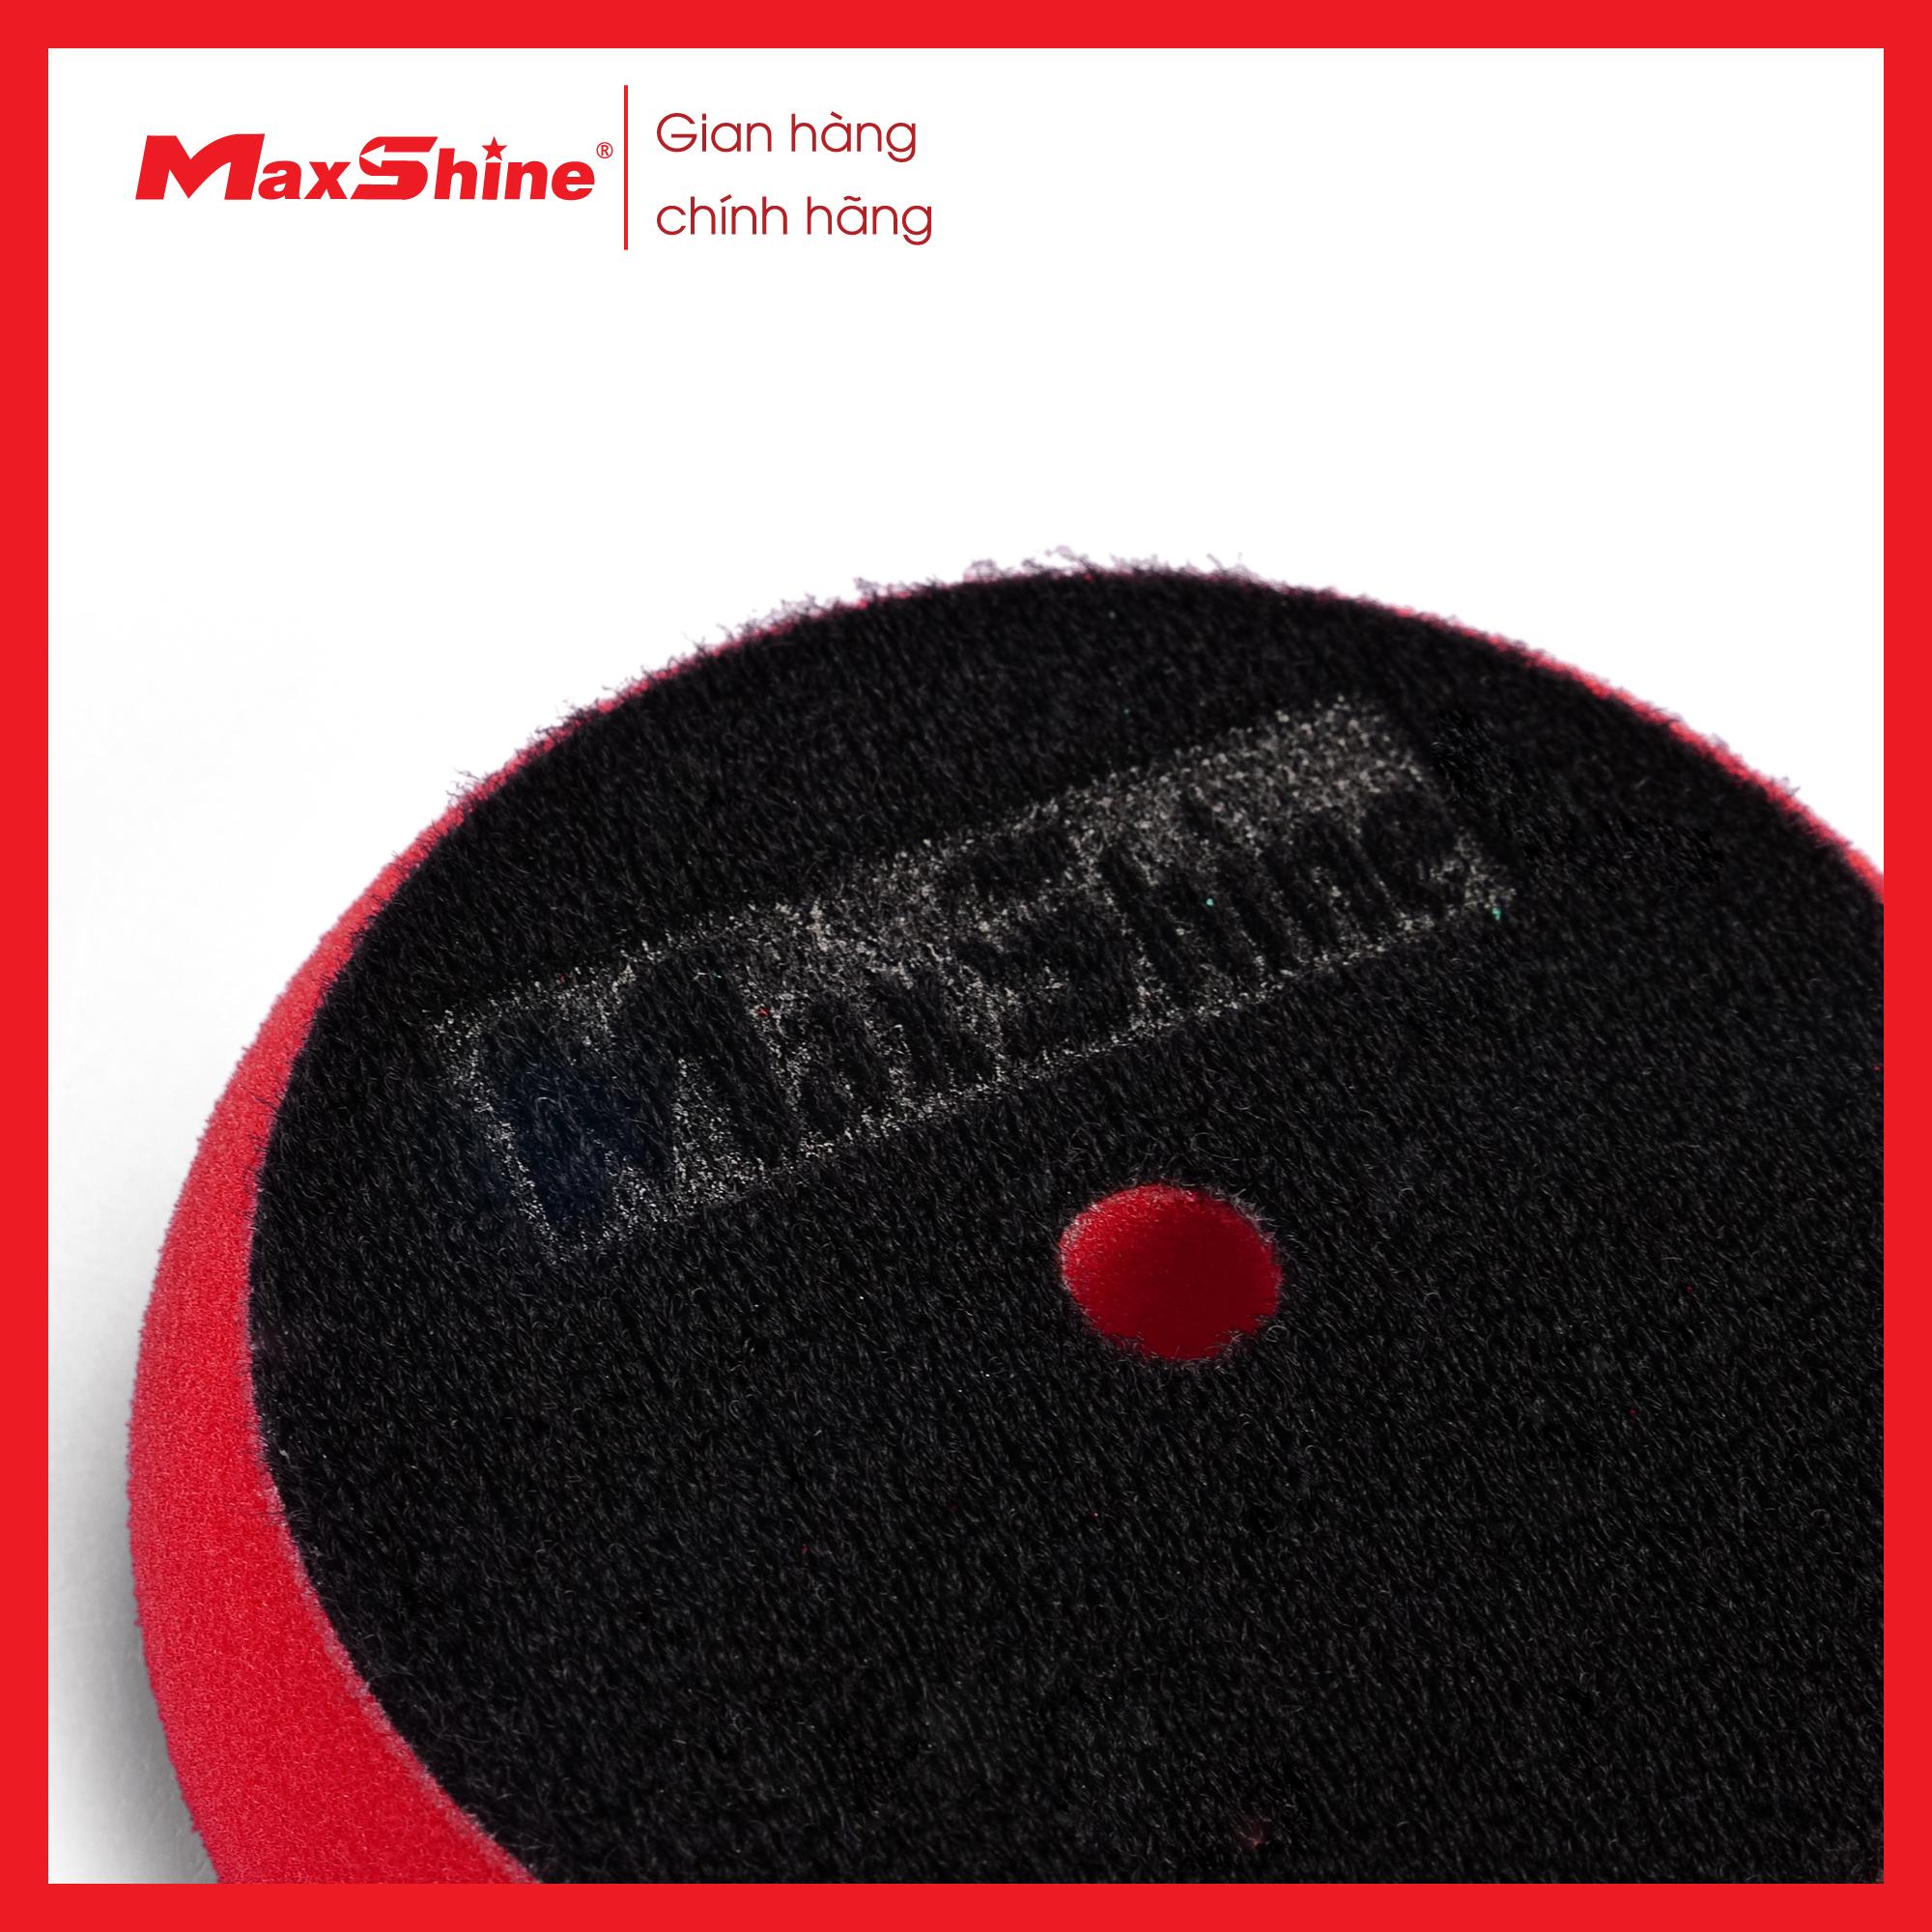 Phớt xốp/mút đánh bóng dạng Caro 5” inch hoàn thiện Maxshine 2003135R được làm từ xốp mềm mại, có khả năng chống rách cao và chống ăn mòn.  Bề mặt sản phẩm cắt chéo giúp hấp thụ tối đa chất đánh bóng